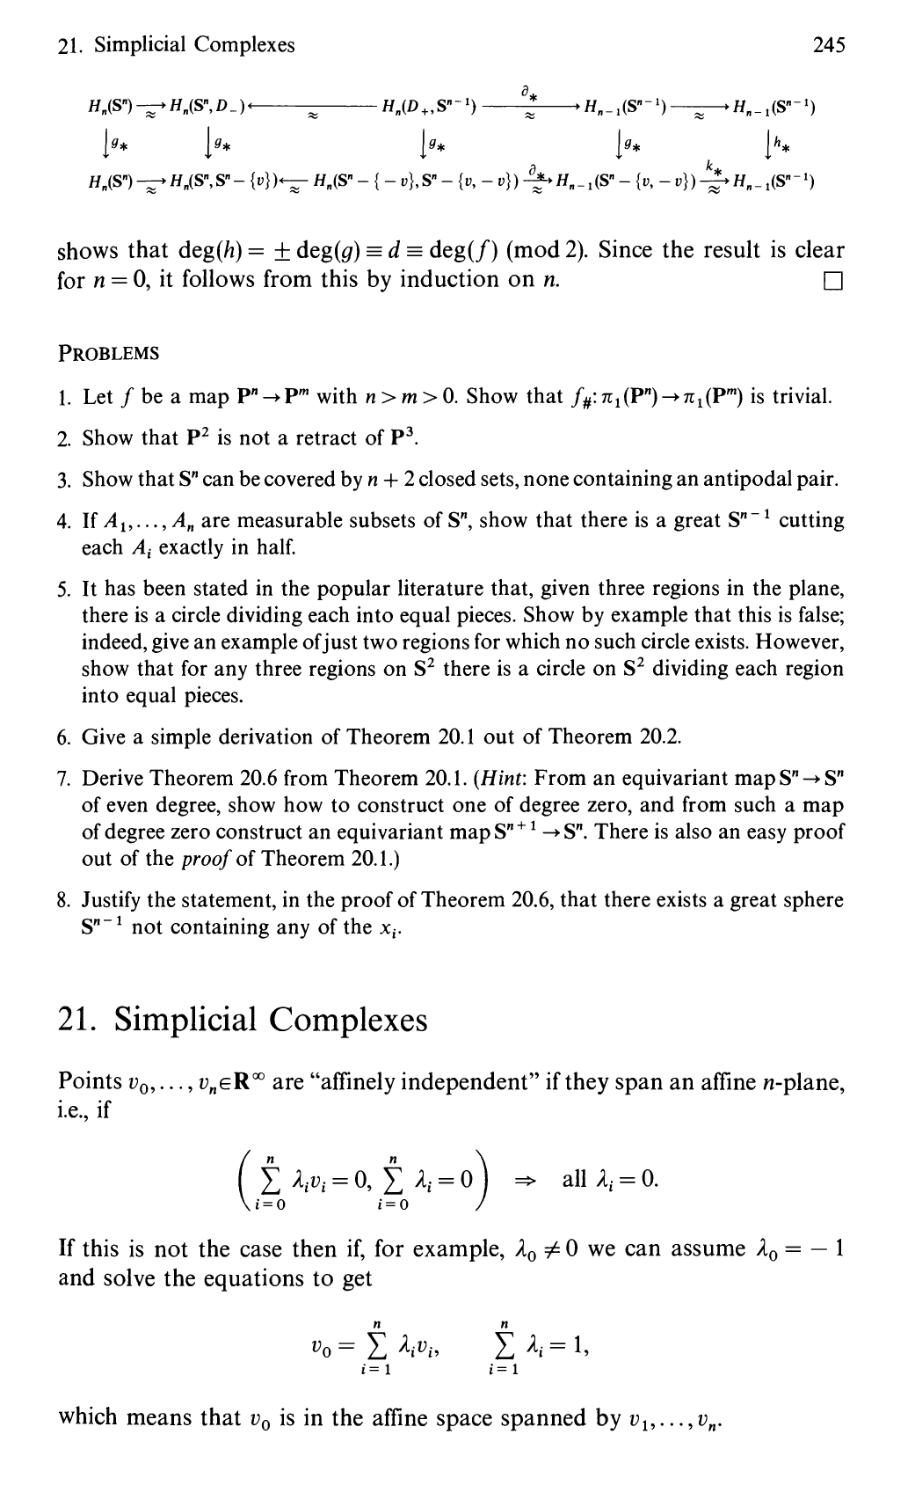 21. Simplicial Complexes